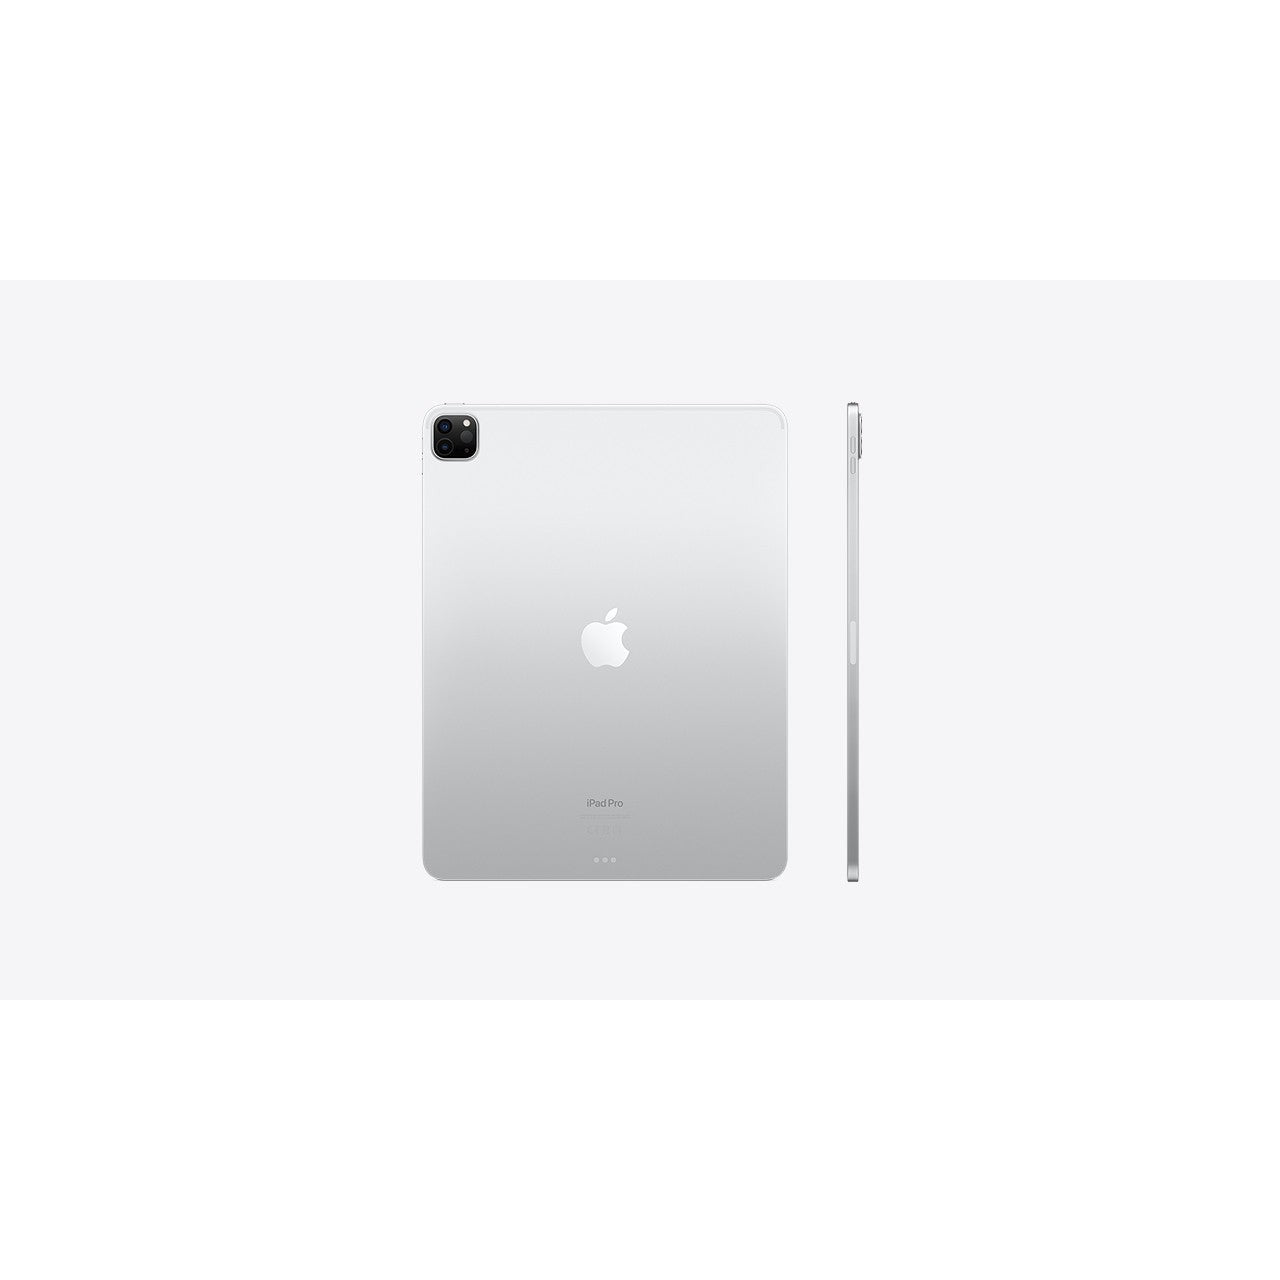 2020 Apple iPad Pro 12.9-inch, Wi-Fi + Cellular, 1TB- Silver - MXFA2LL/A